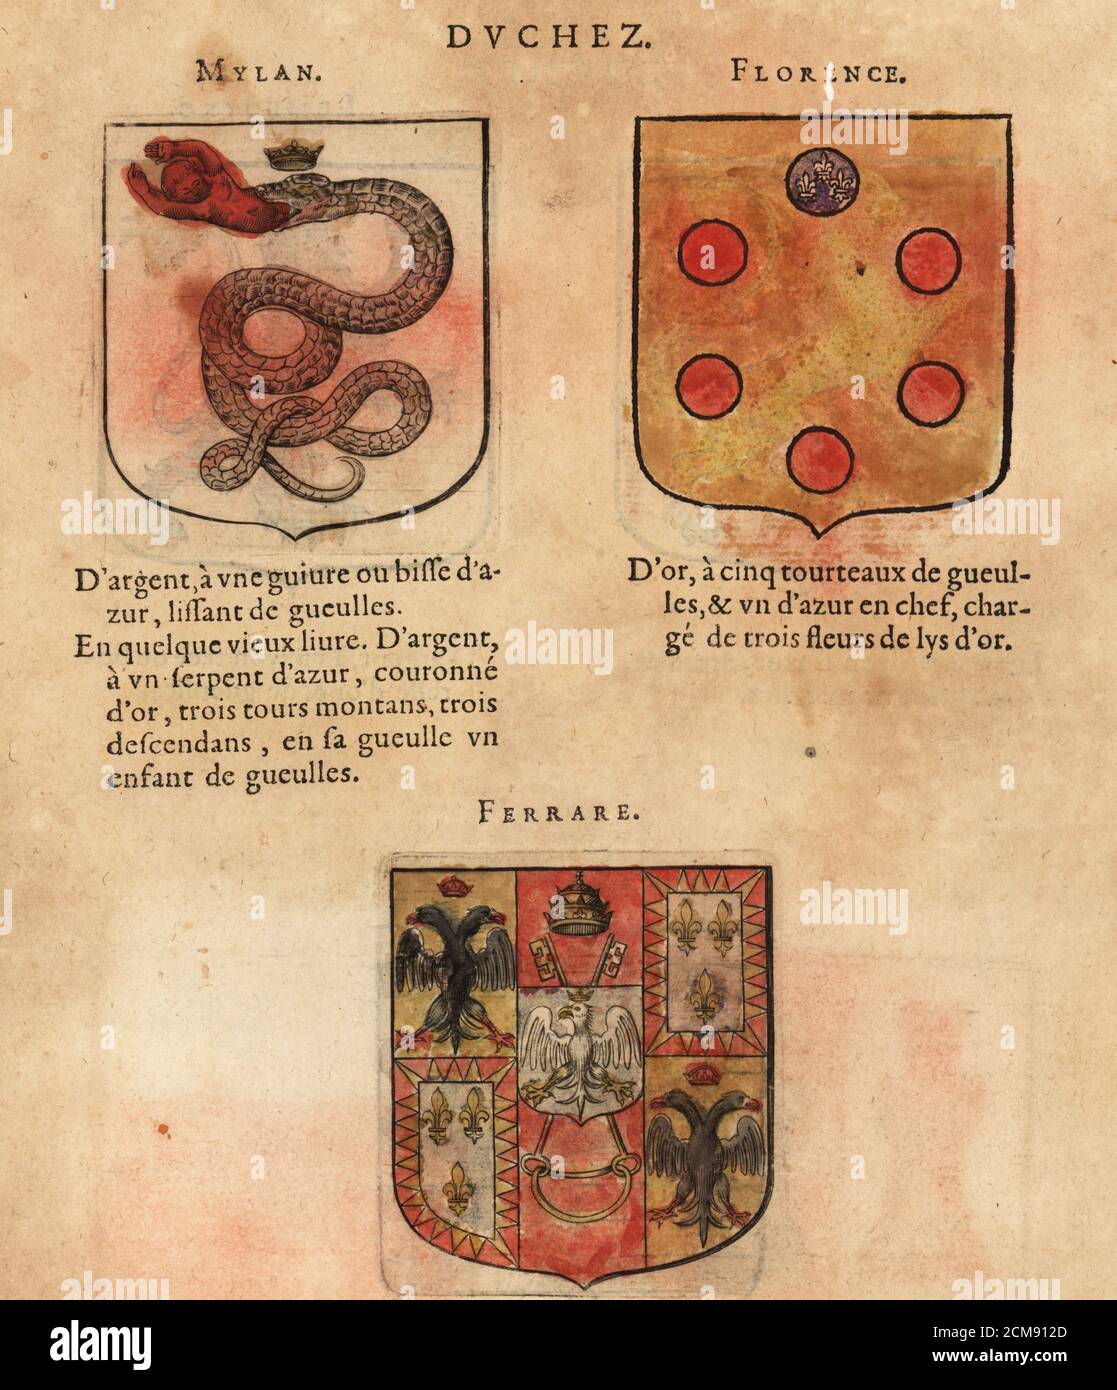 Armoiries des Duchies de Milan avec un serpent couronné mangeant un bébé,  Florence avec des cocardes, et Ferrara avec couronne, clés, aigle à deux  têtes, fleurs-de-lys, etc. Duchez de Mylan, Florence, Ferrare.